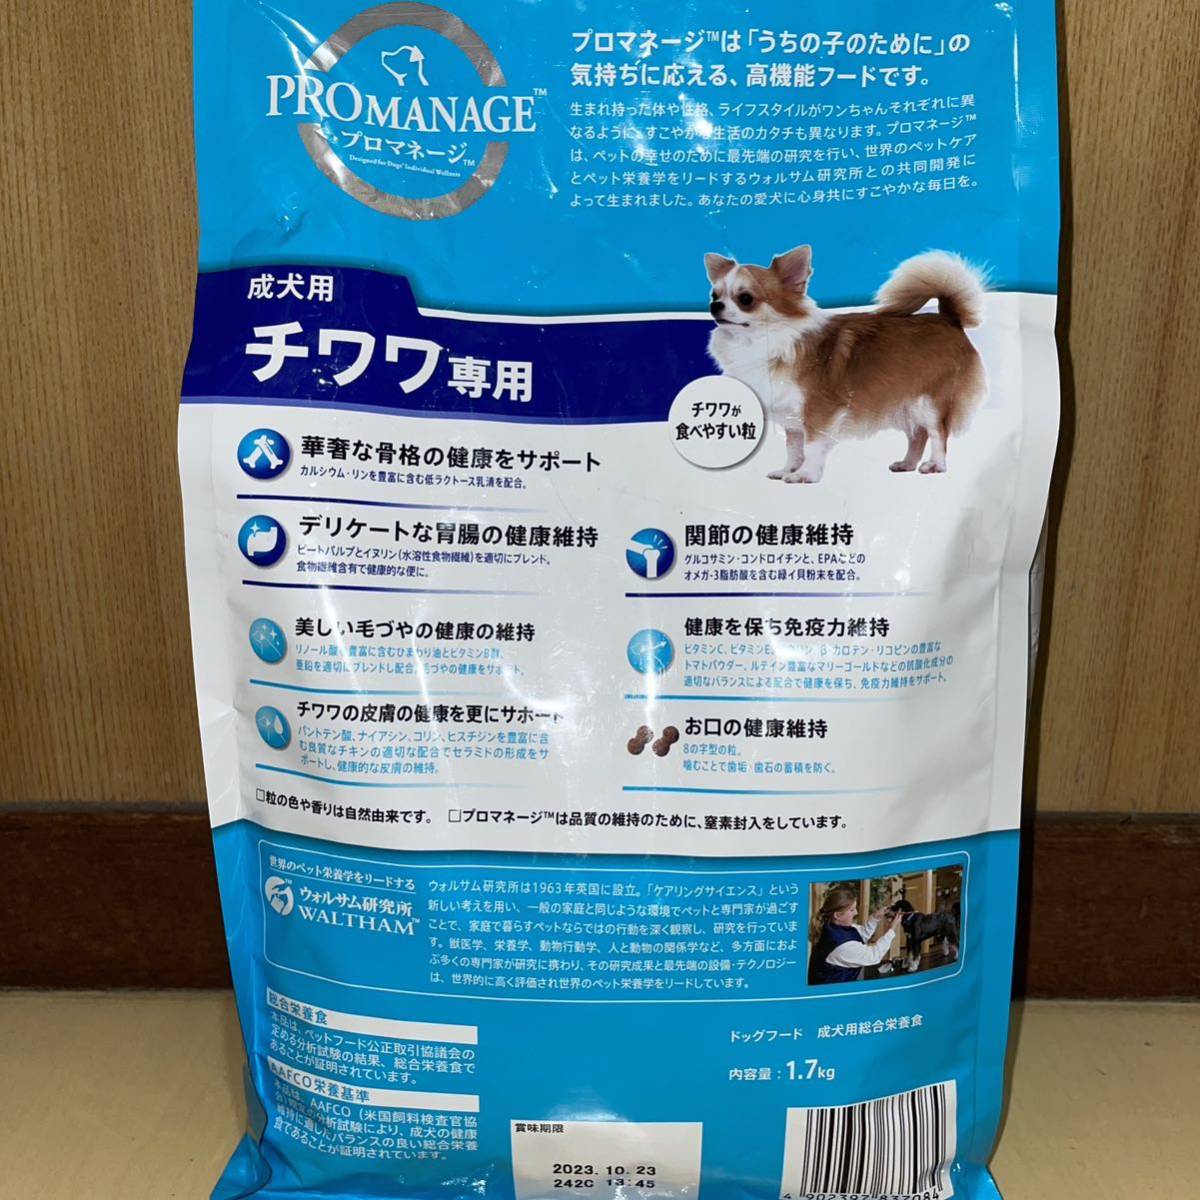 2 пункт MARSma-s Pro деньги ji для взрослой собаки чихуахуа специальный 1.7kg x2 всего 3.4kg корм для собак корм для животных 